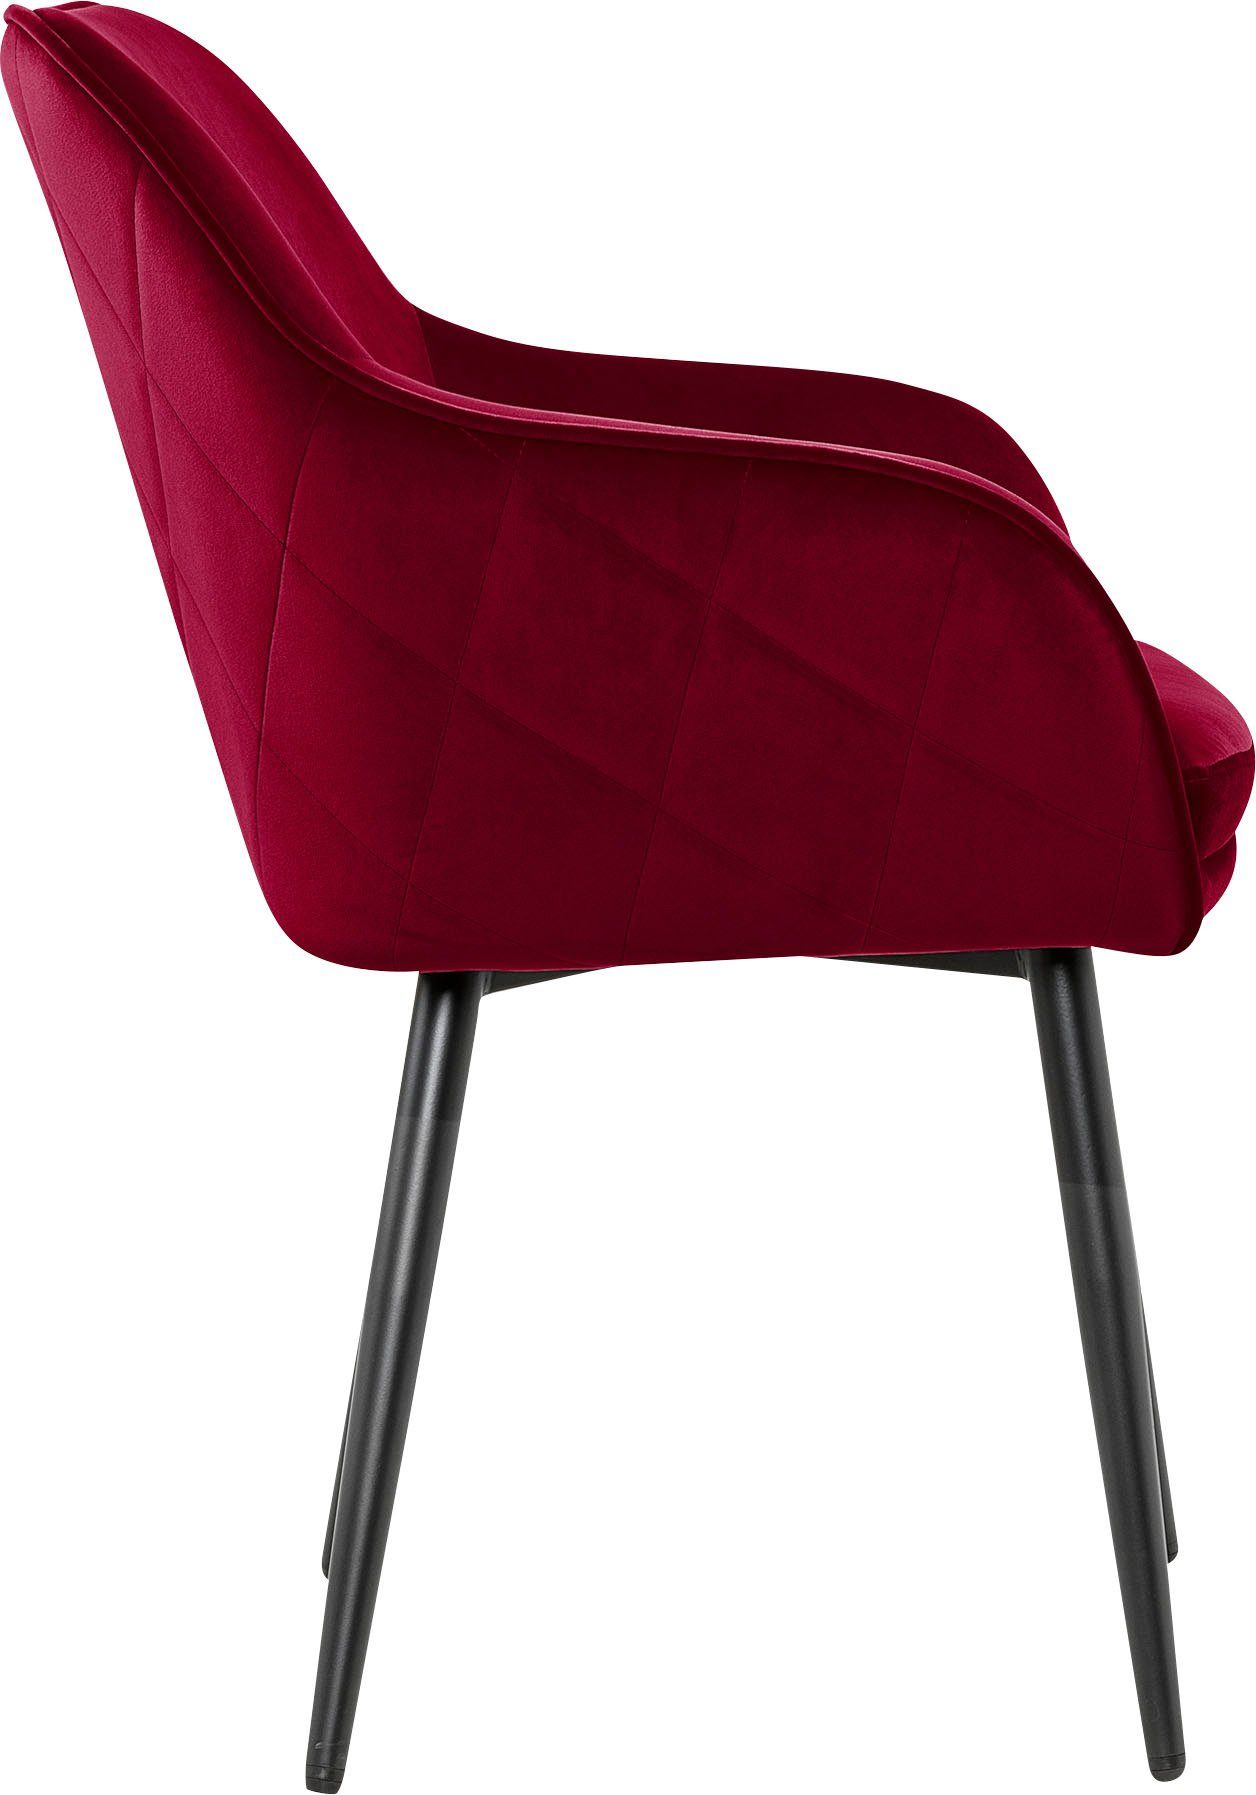 SalesFever Armlehnstuhl, mit Diamantsteppung Rot/Schwarz auf Rückseite der